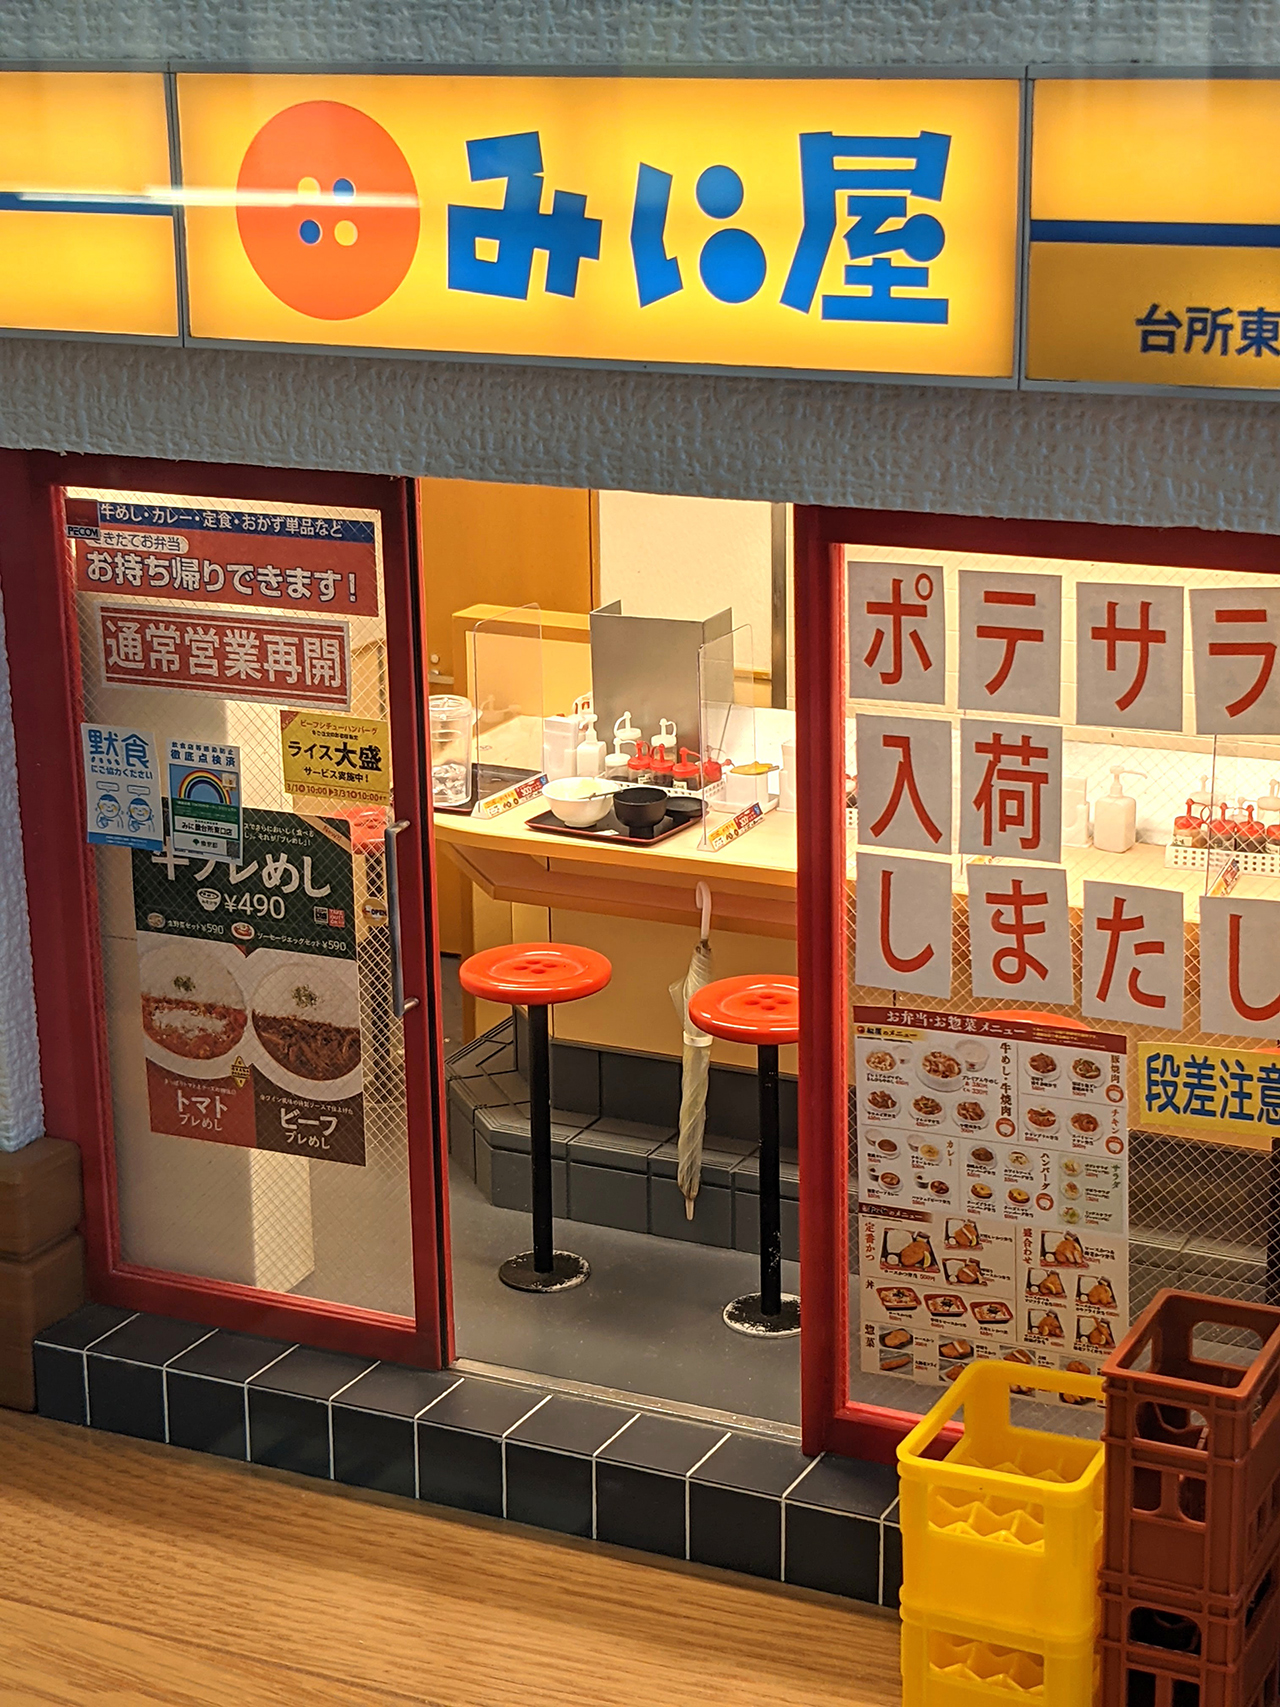 大丸東京1階ショーウインドー（会場外）で展示中の「こびとの牛丼屋」© MOZU STUDIOS